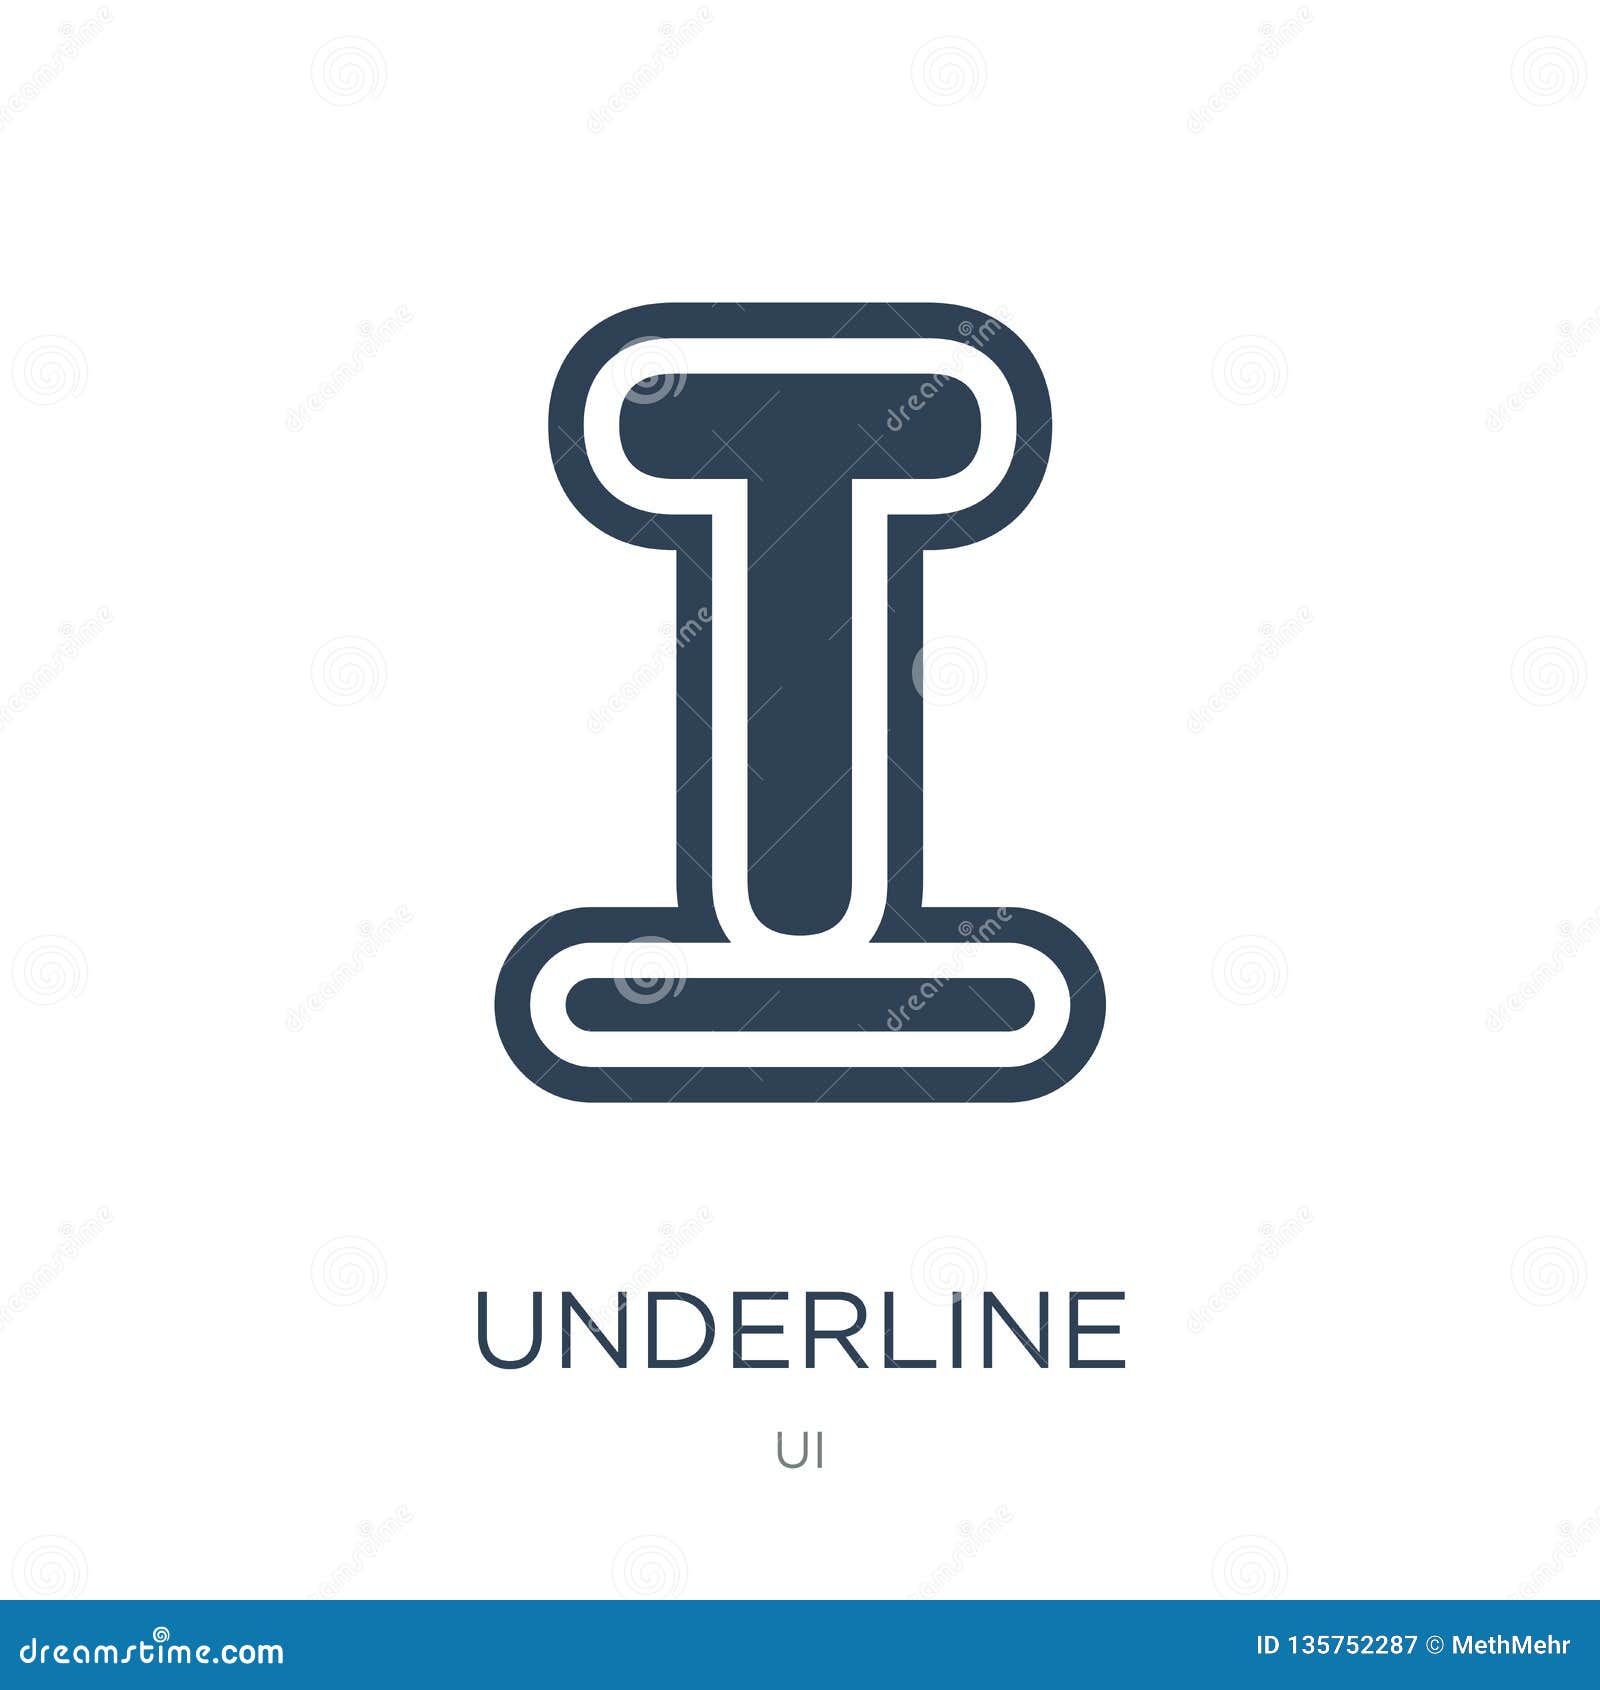 Download Underline Icon In Trendy Design Style. Underline Icon ...